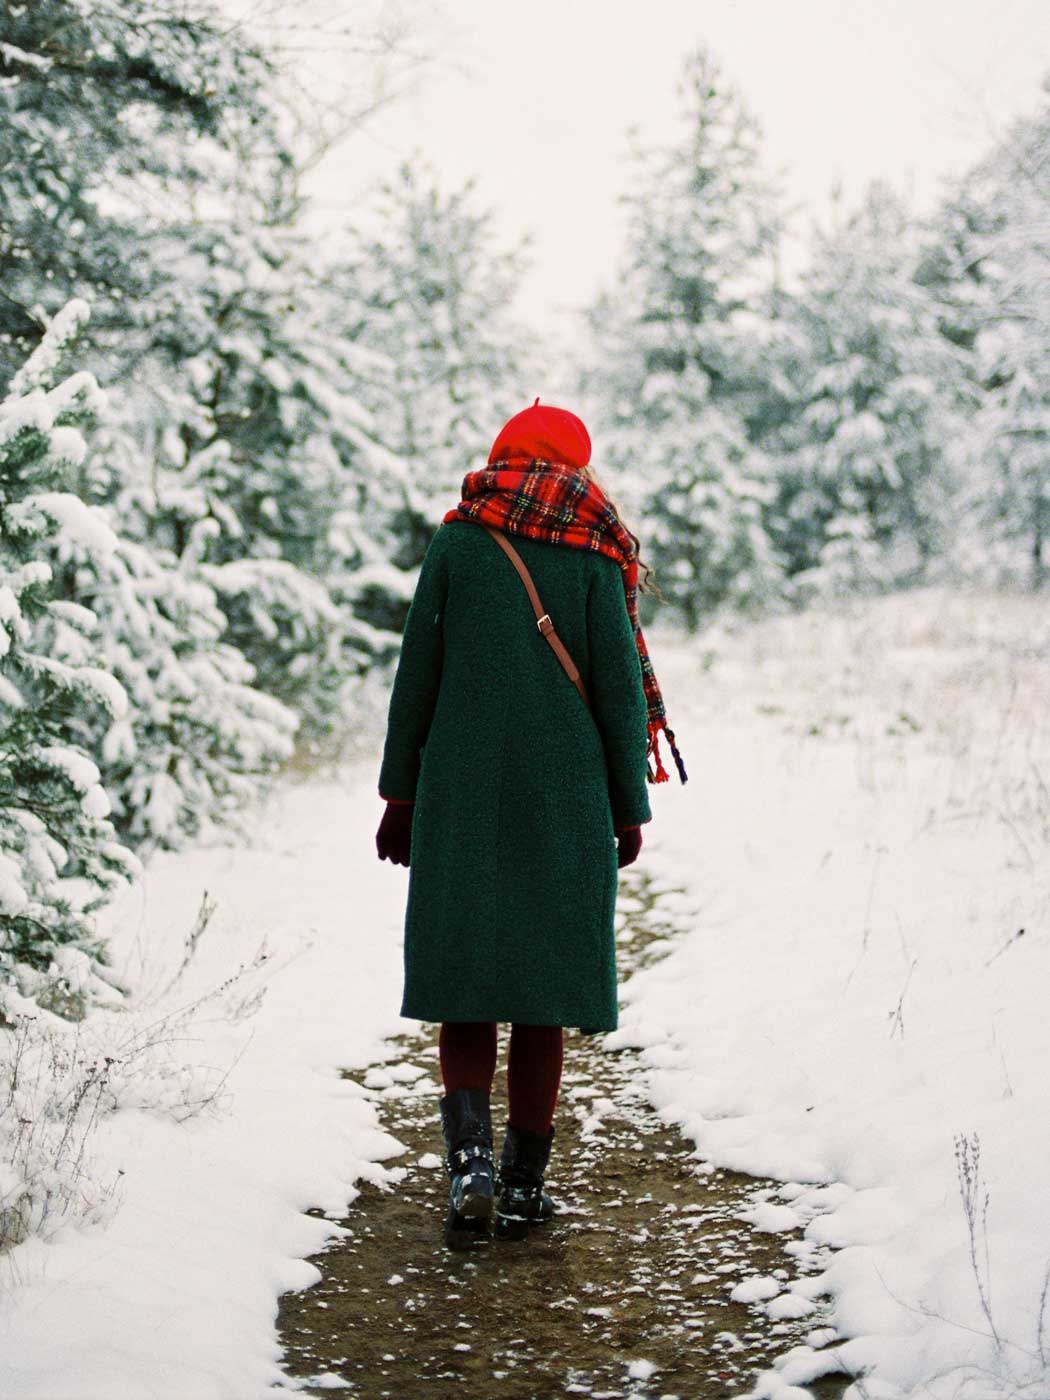 Frau von hinten, die durch einen verschneiten Wald spaziert 